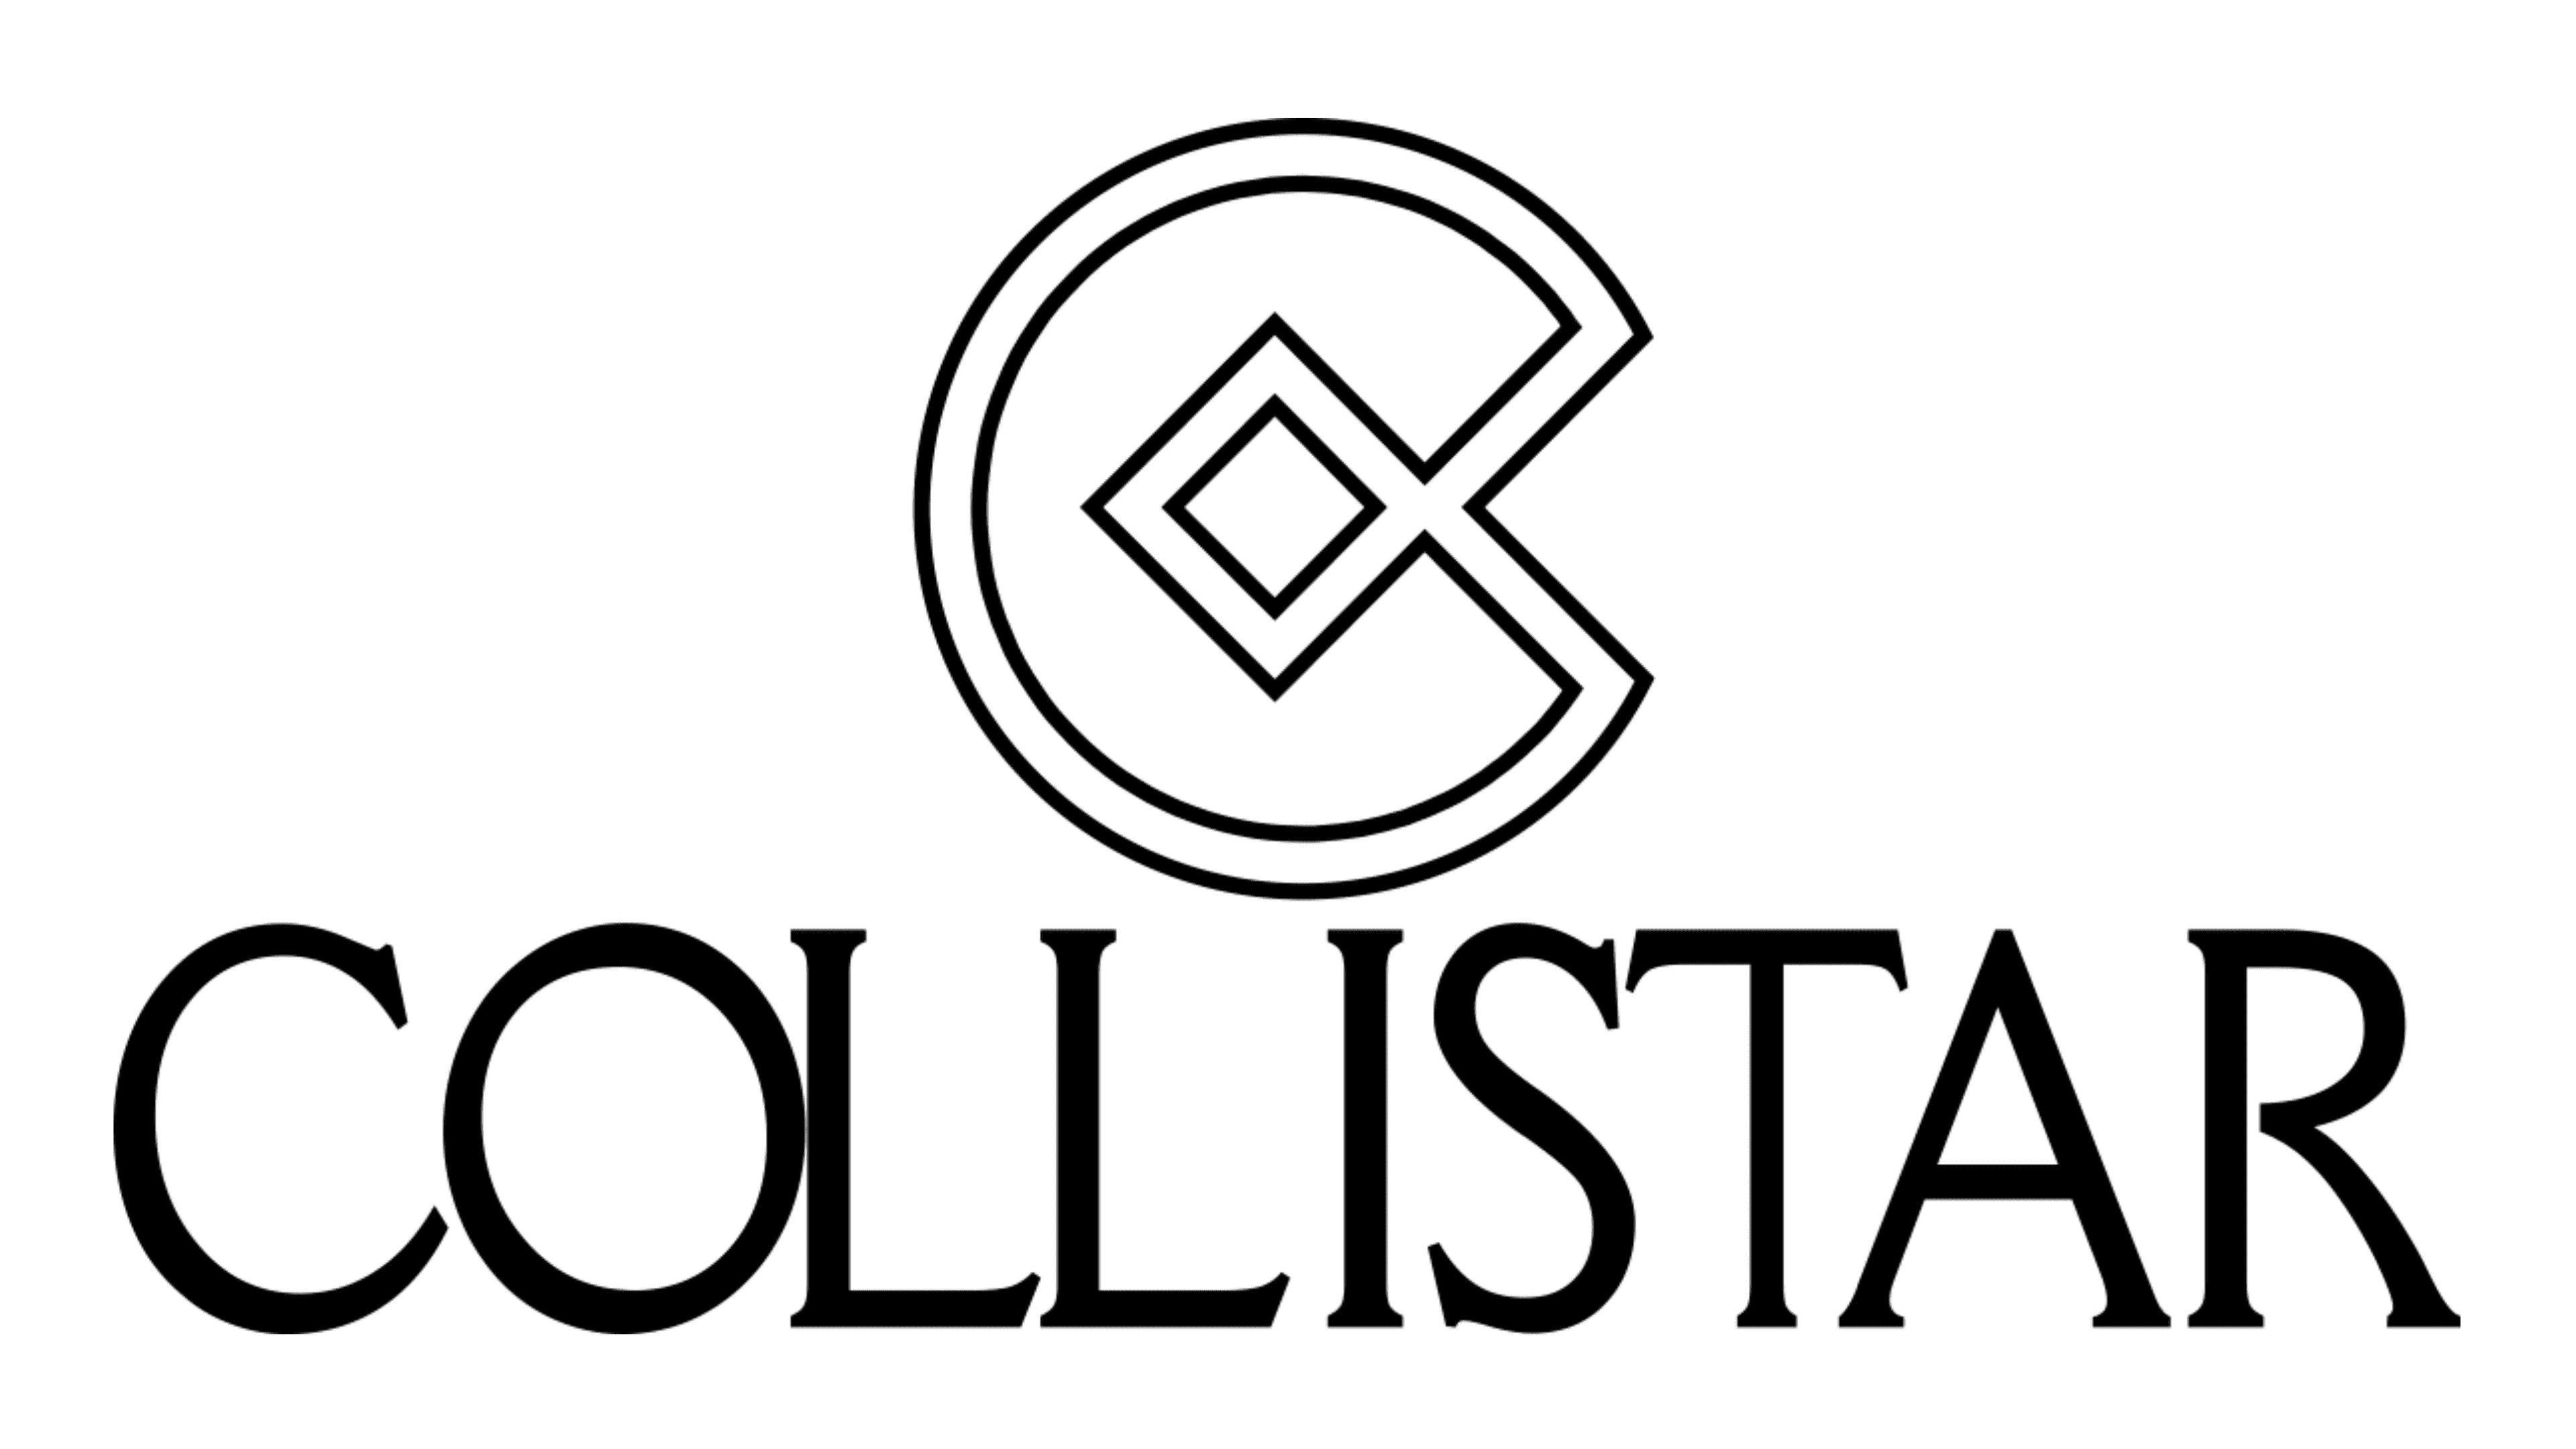 Collistar Logo Dan Simbol Makna Sejarah Png Merek Sexiz Pix Images And Photos Finder